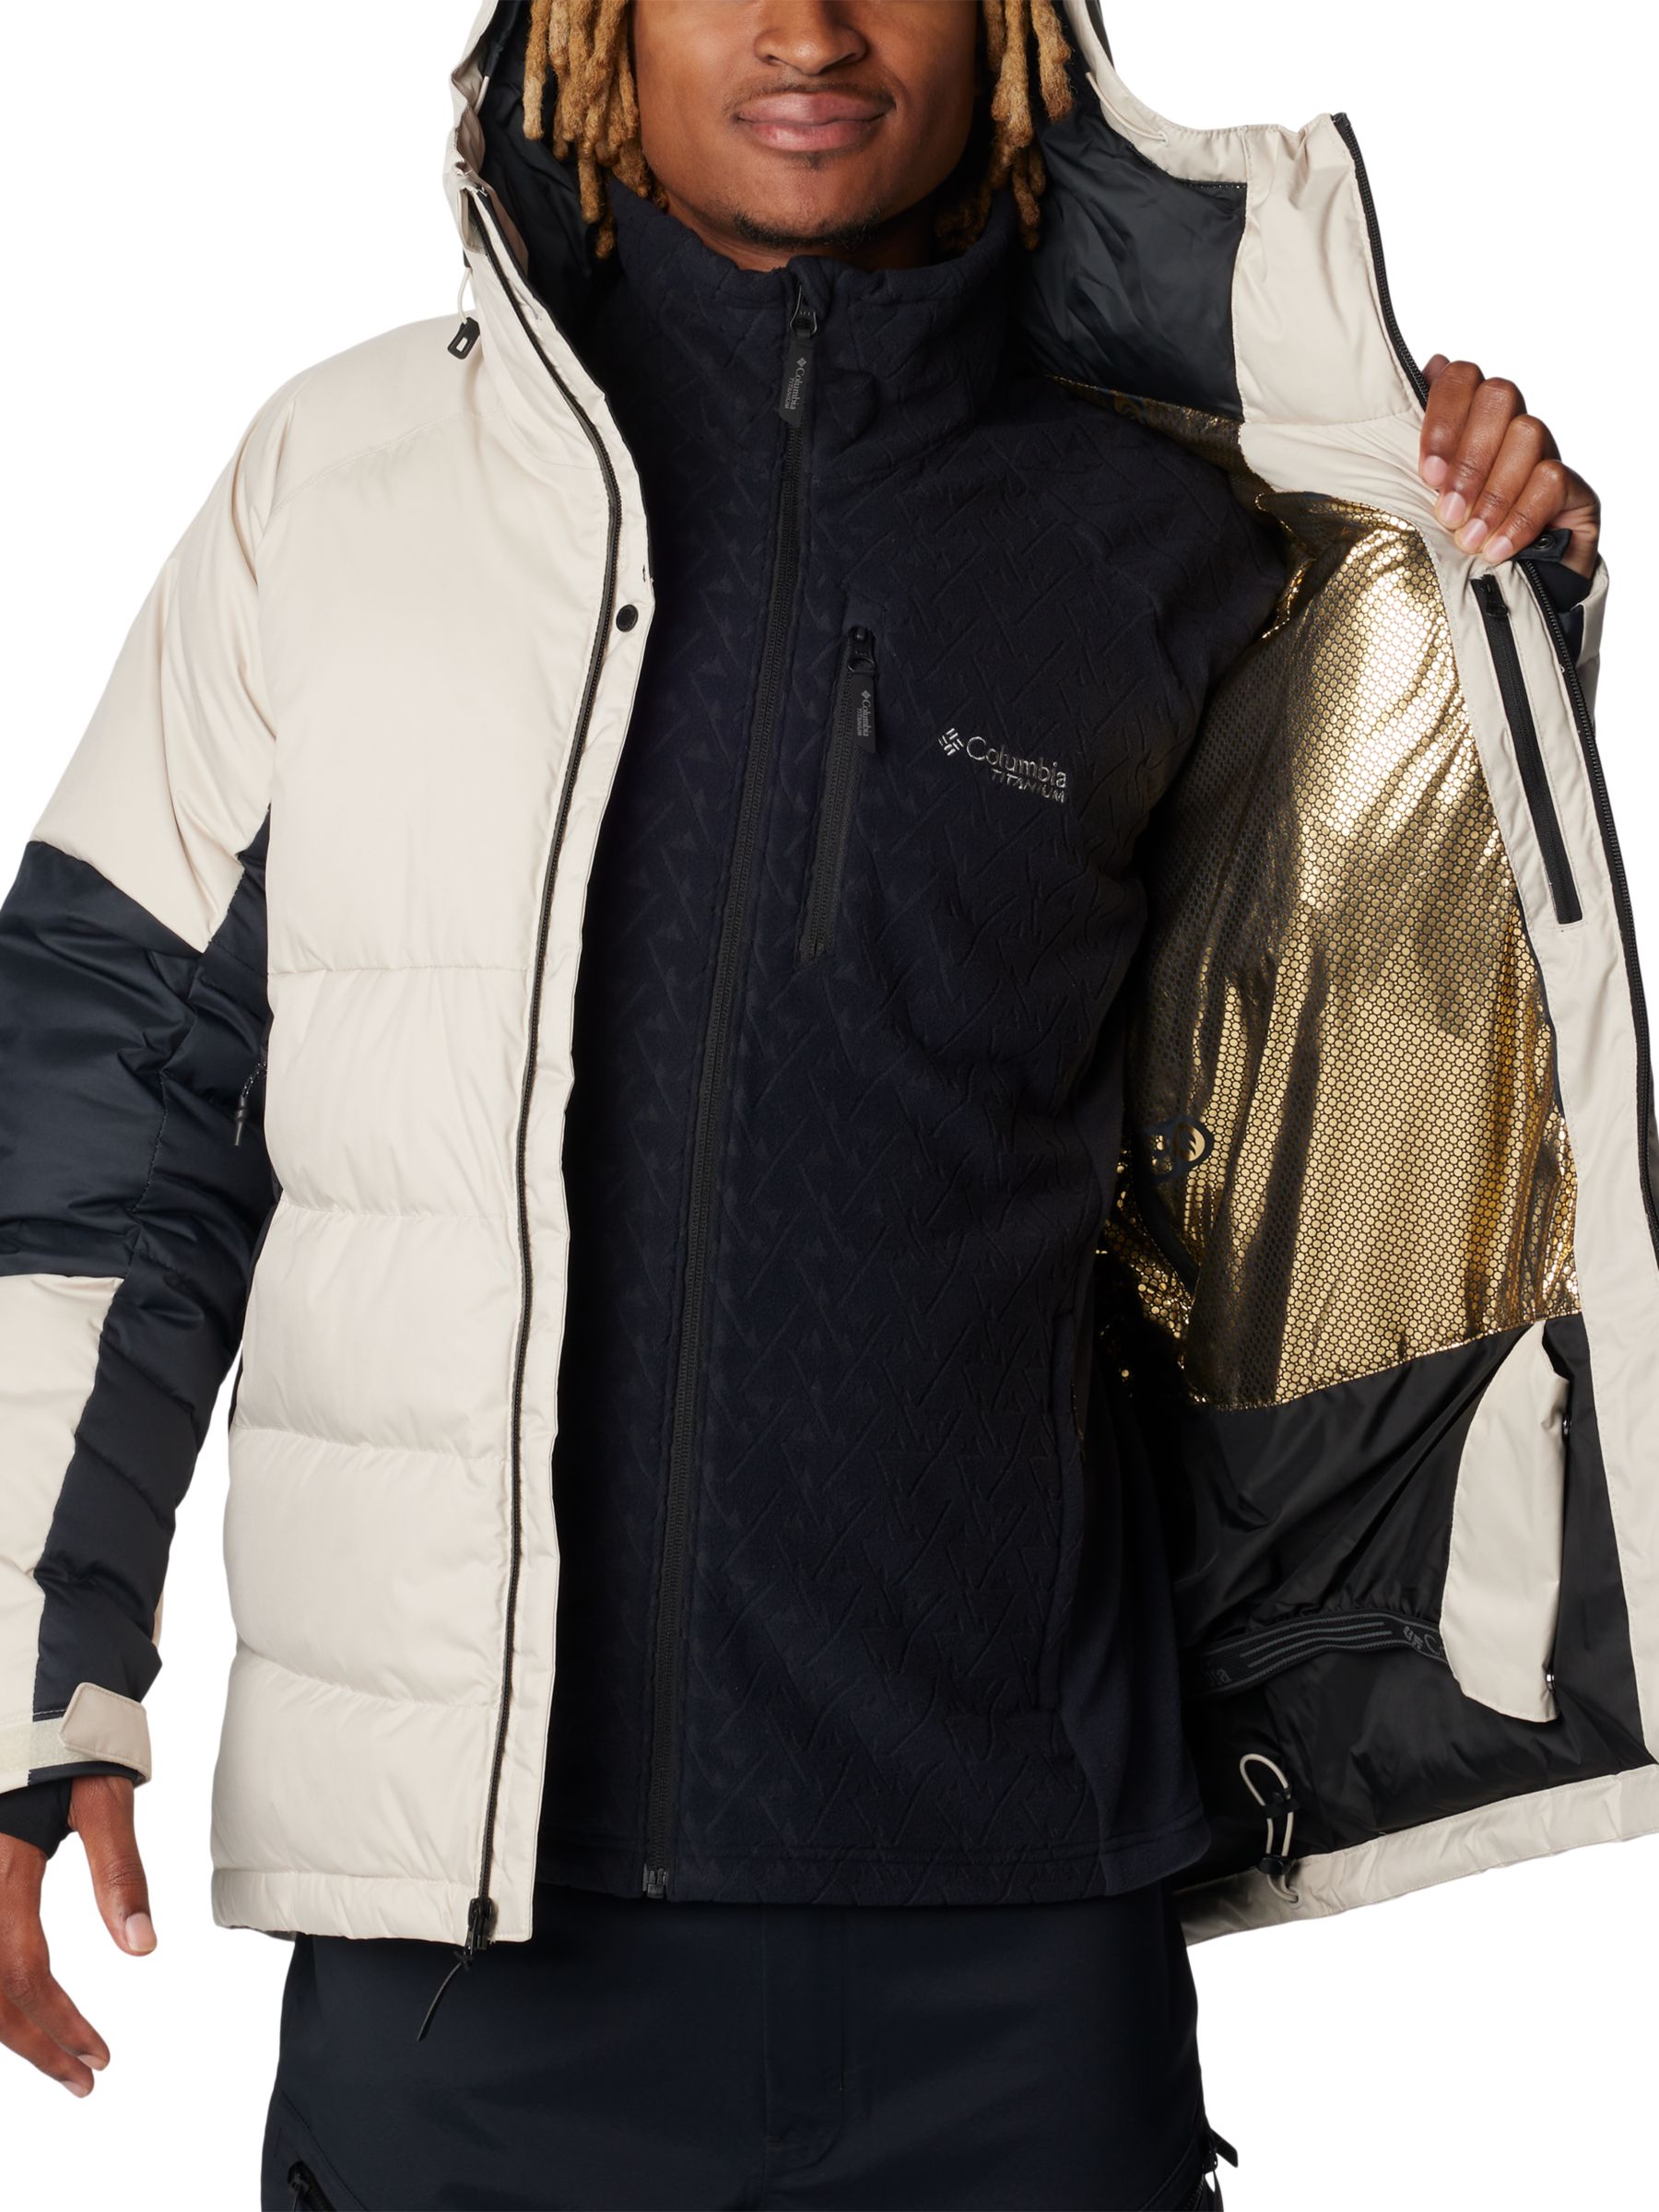 Buy Columbia Roaring Fork Men's Waterproof Ski Jacket, Dark Stone/Black Online at johnlewis.com